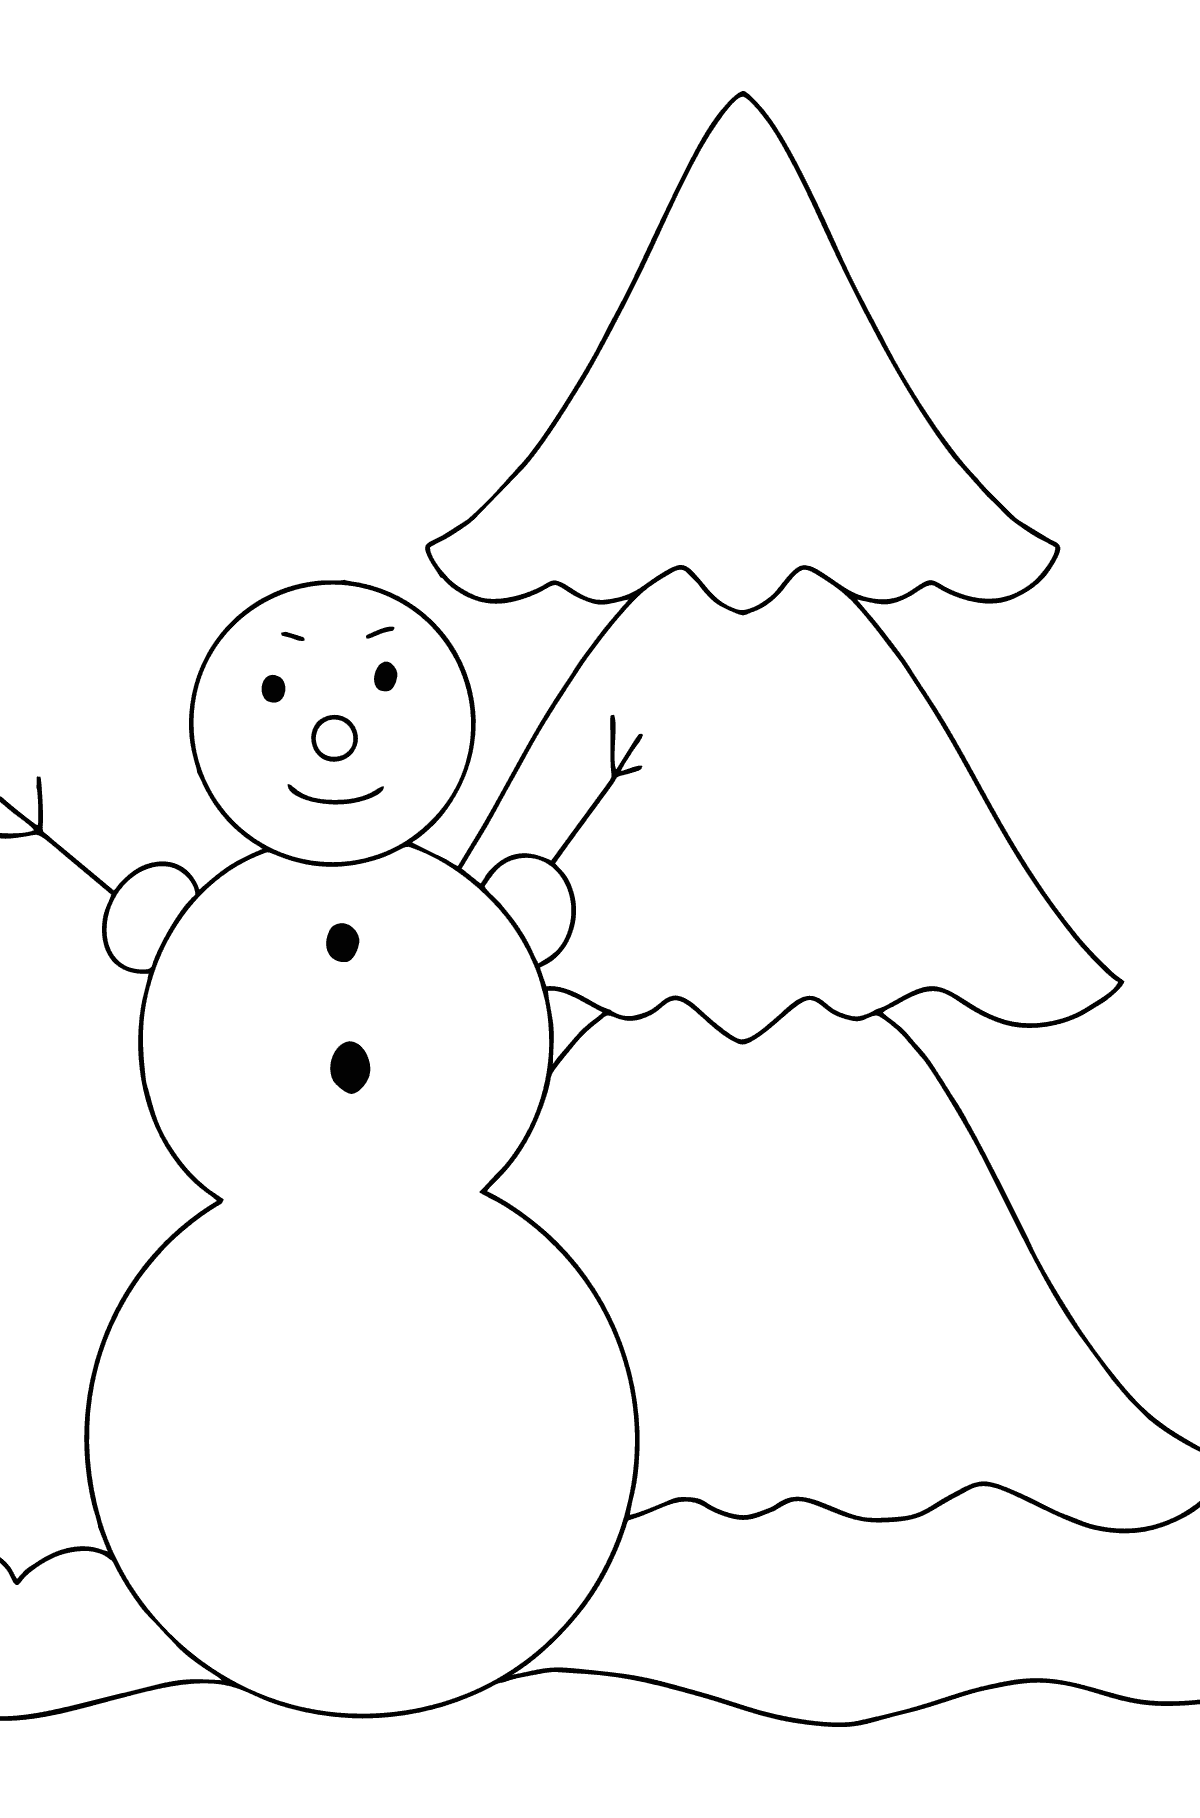 Ausmalbild: Schneemann und Weihnachtsbaum - Malvorlagen für Kinder